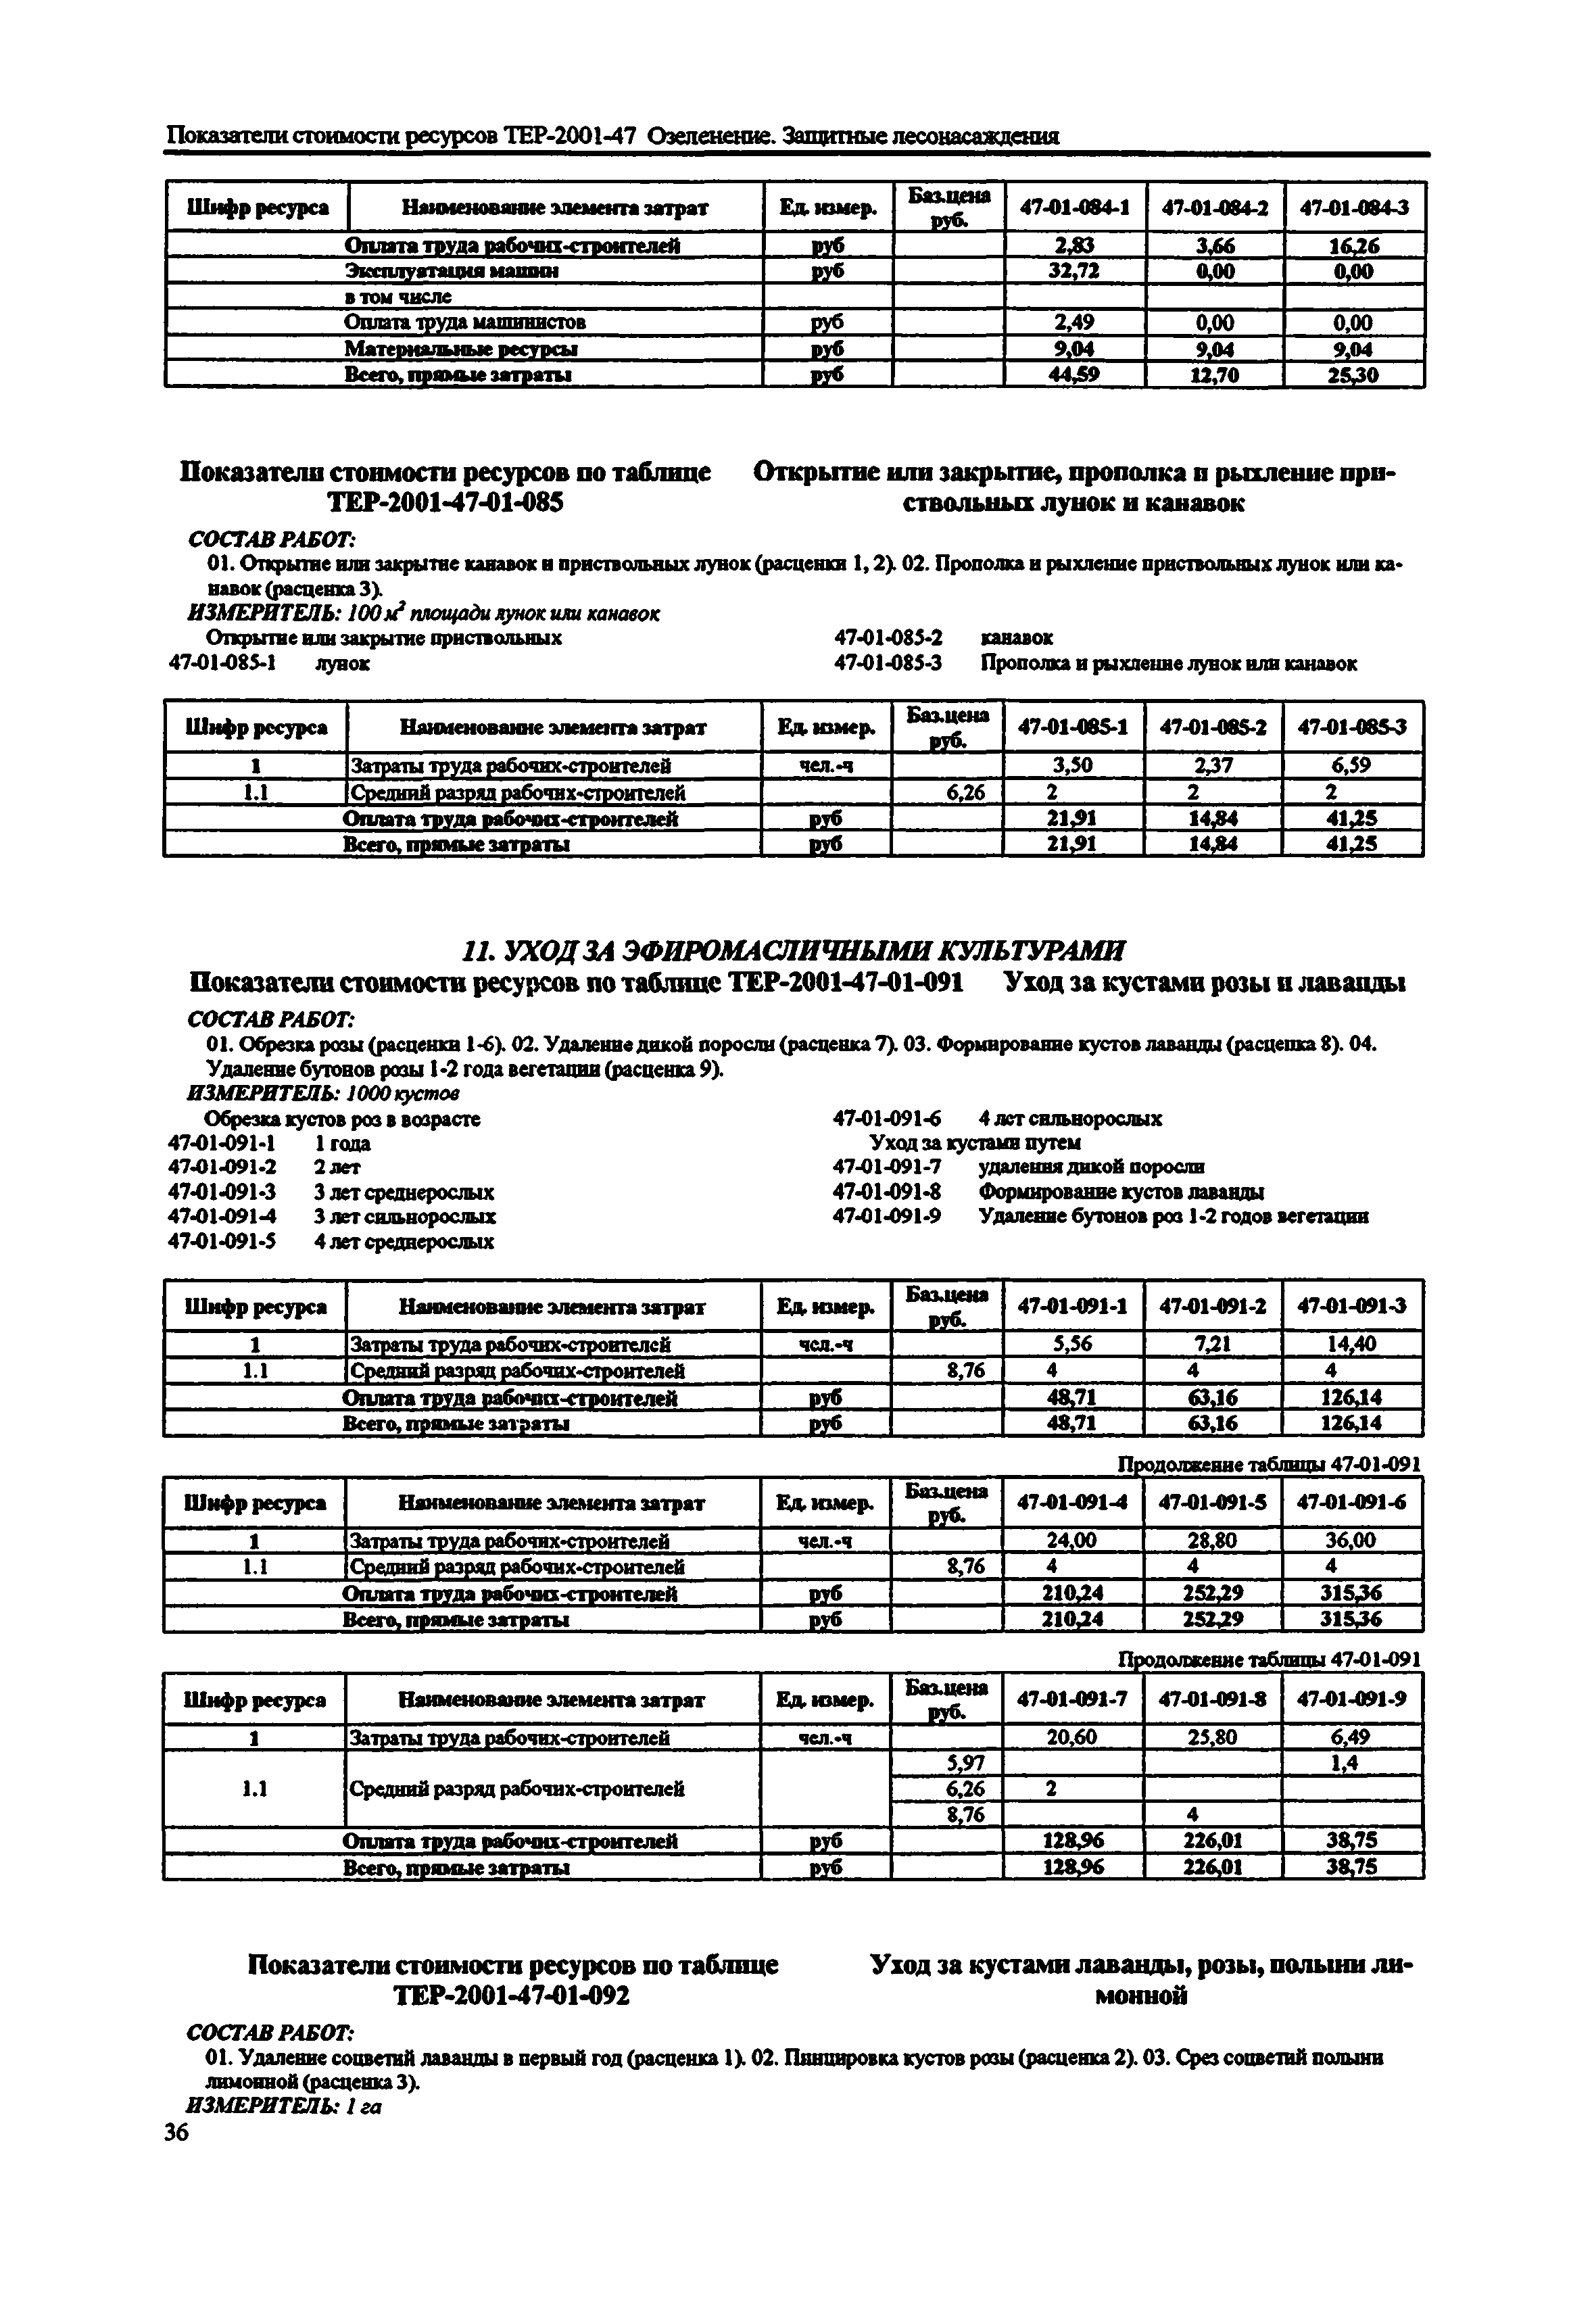 Справочное пособие к ТЕР 81-02-47-2001